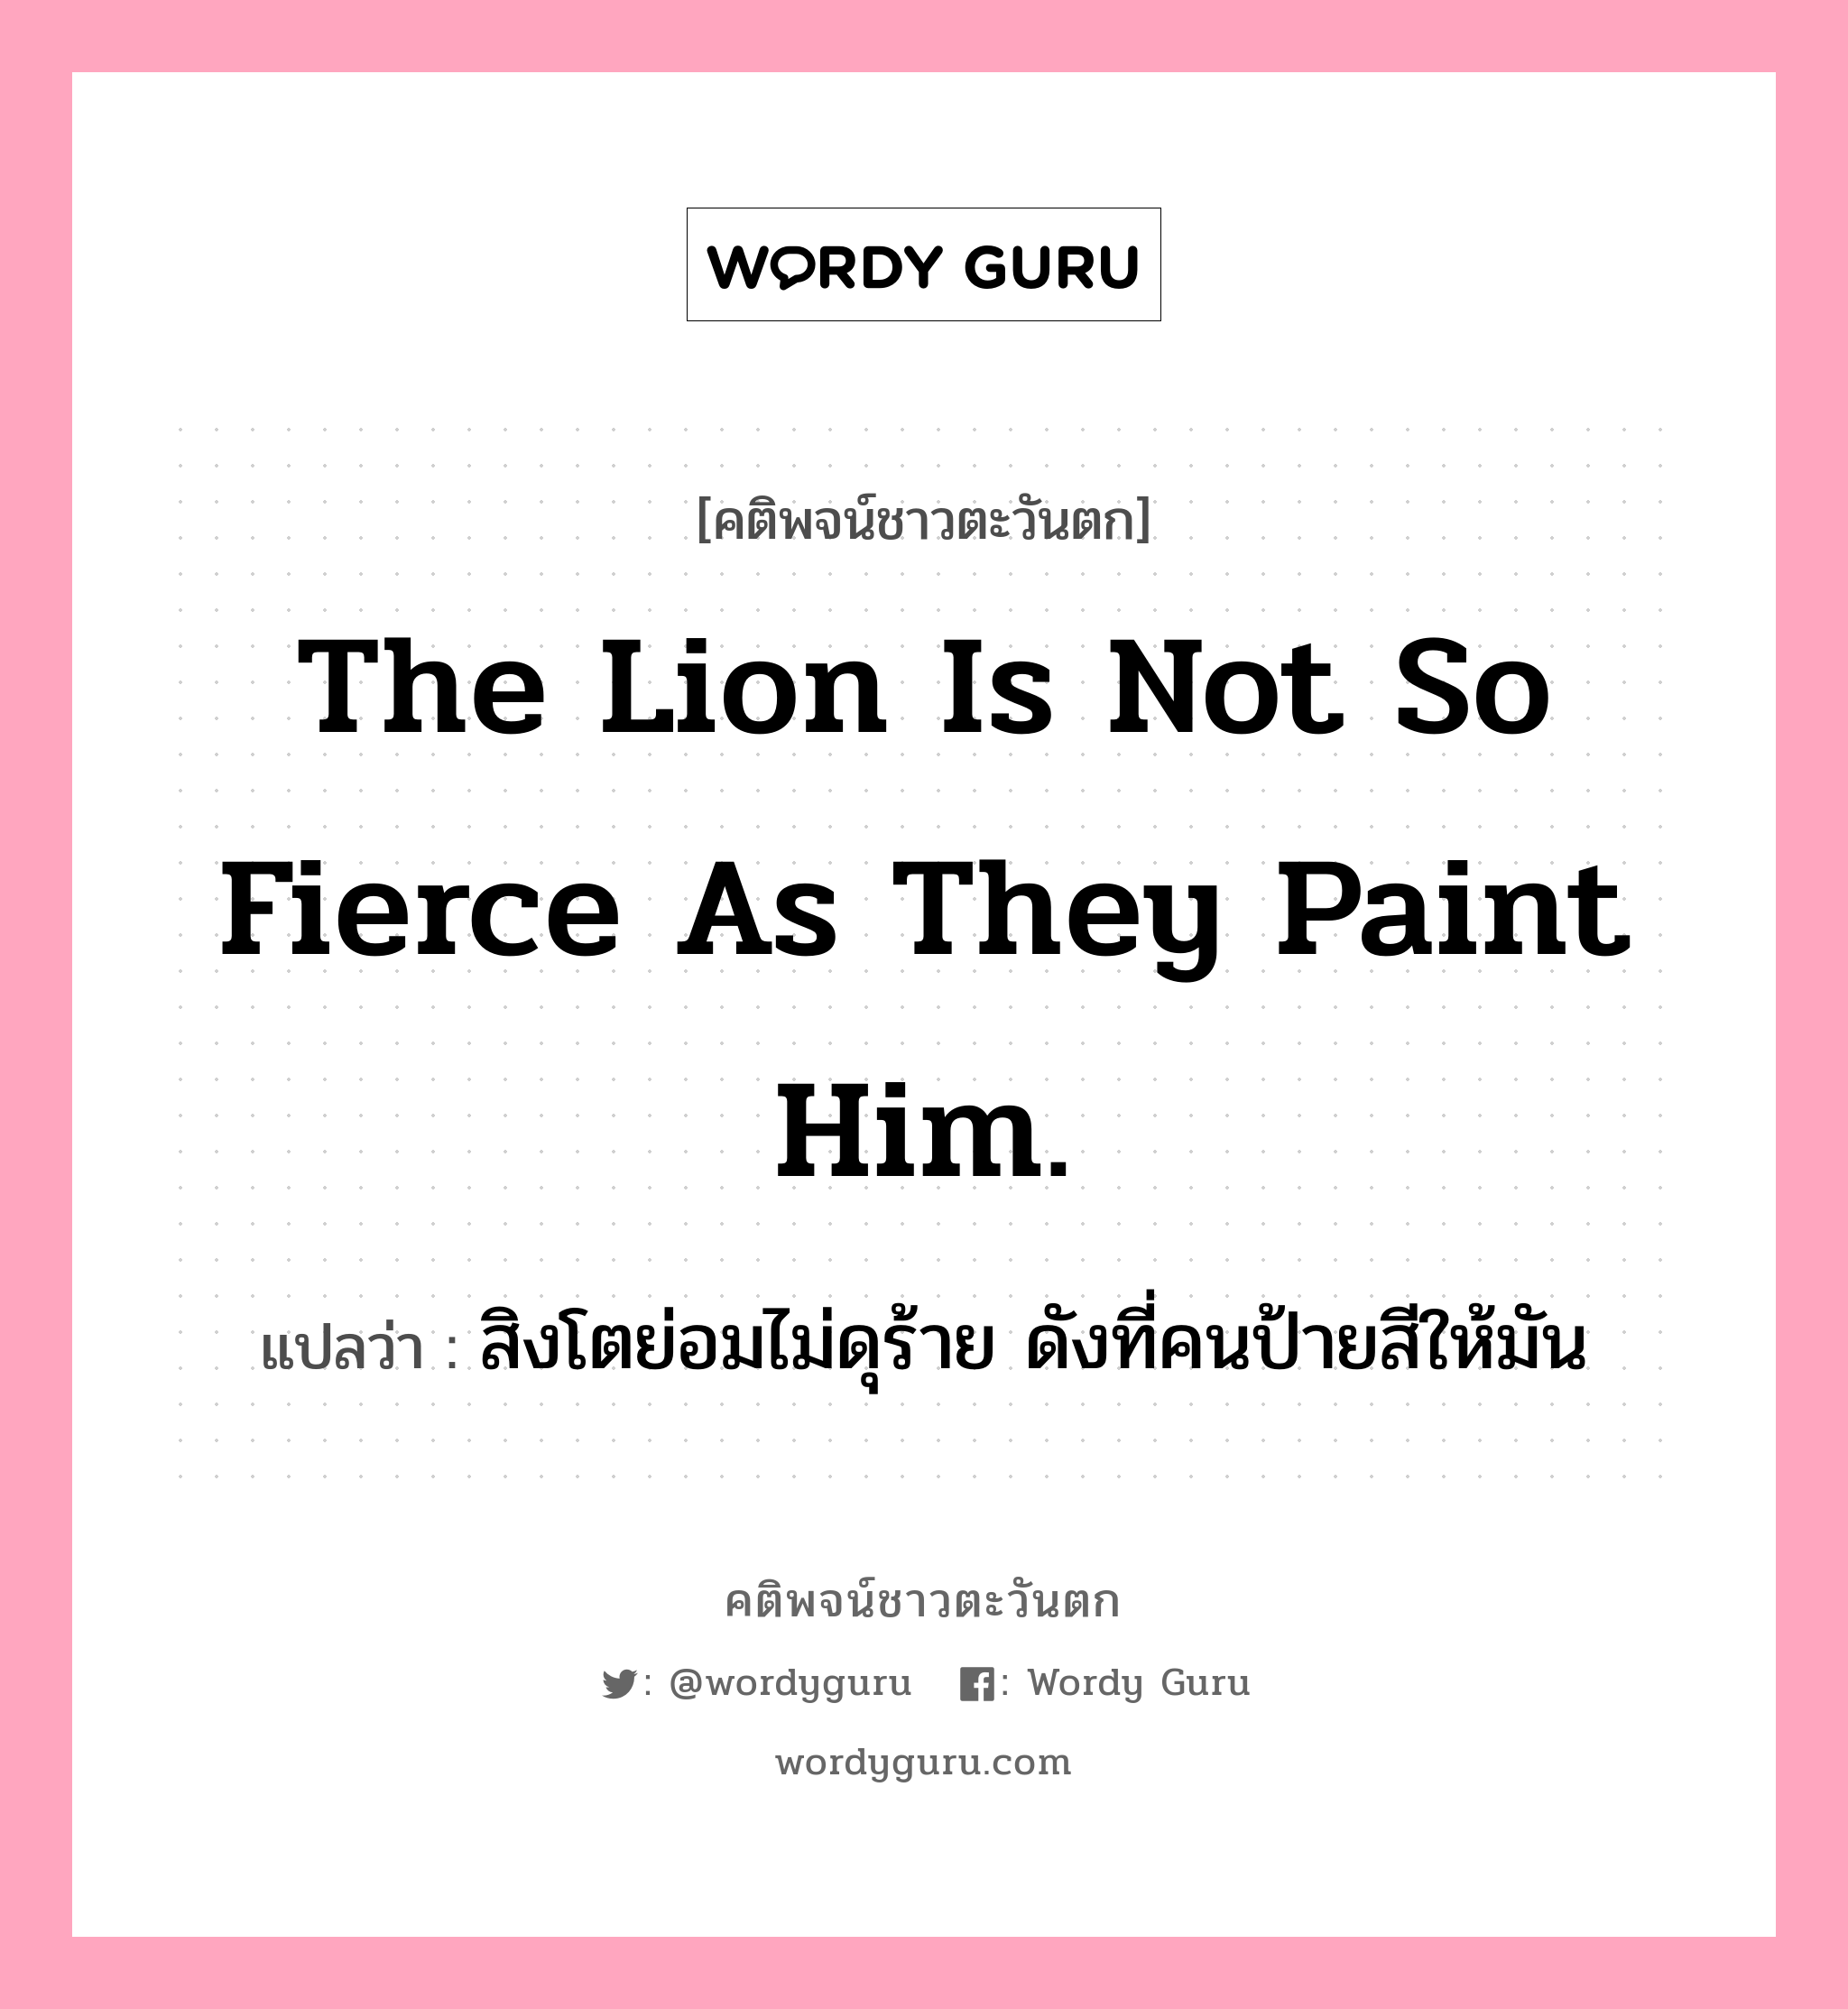 The lion is not so fierce as they paint him., คติพจน์ชาวตะวันตก The lion is not so fierce as they paint him. แปลว่า สิงโตย่อมไม่ดุร้าย ดังที่คนป้ายสีให้มัน